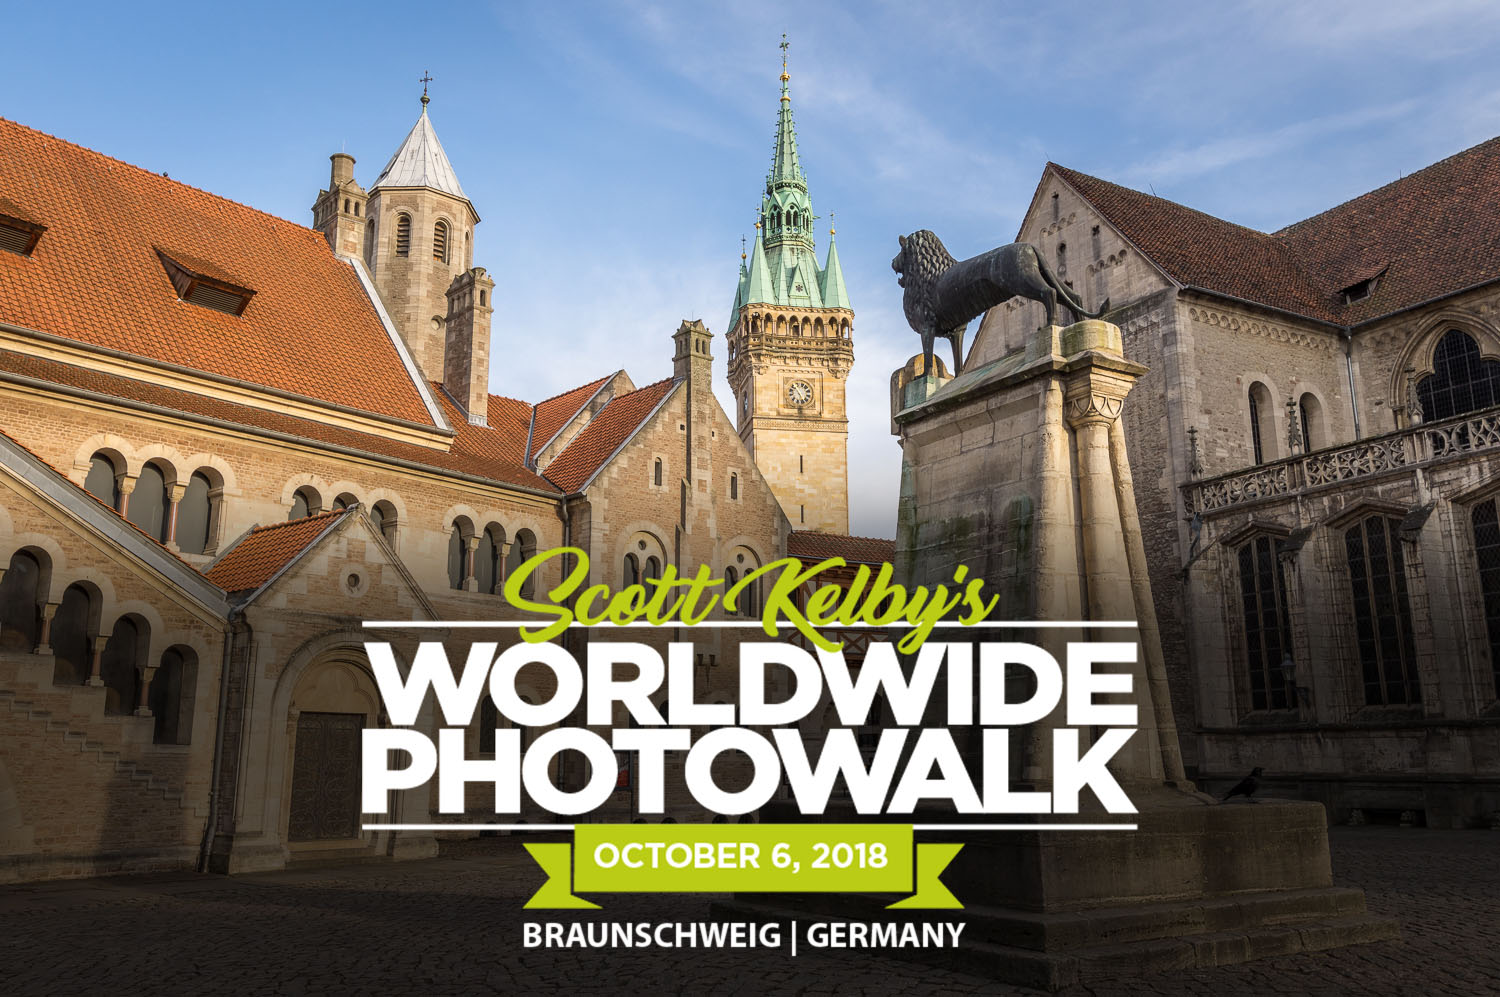 Worldwide Photo Walk 2018 Braunschweig Germany